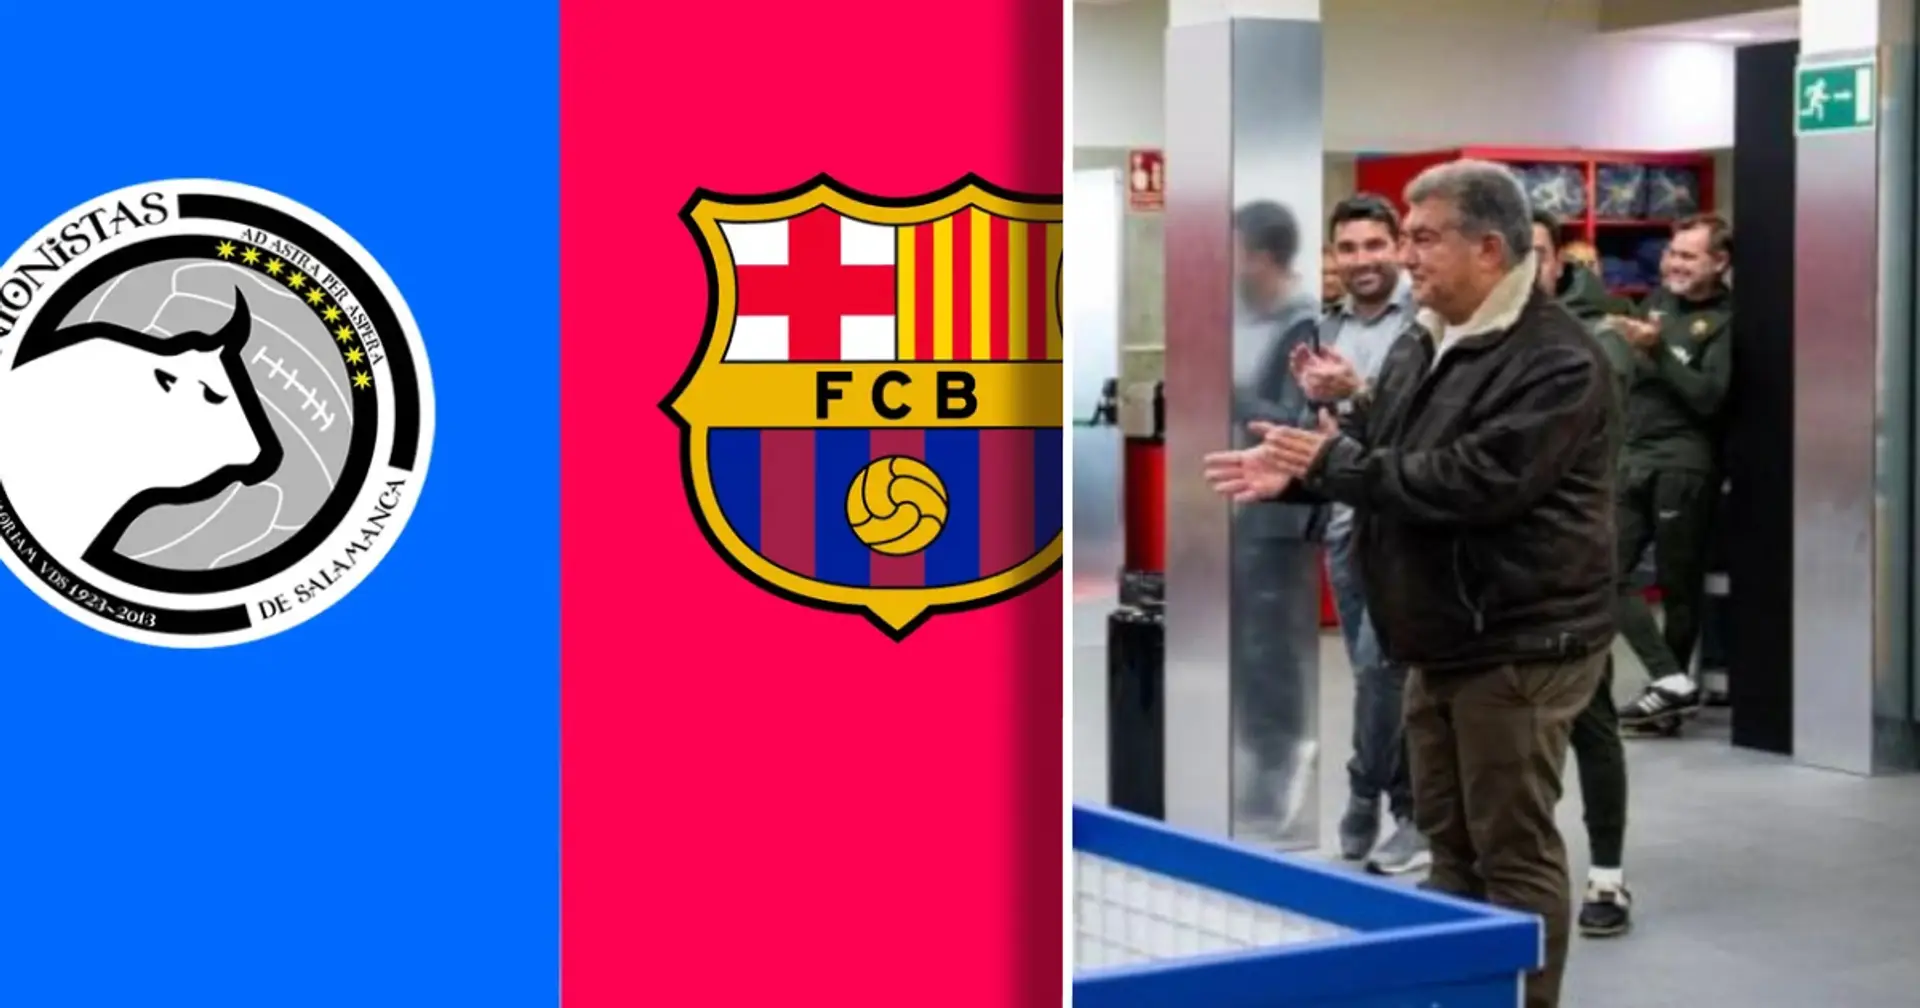 Repéré: le président du Barça dans les vestiaires de l'équipe pour une discussion cruciale avant le match en Copa Del Rey